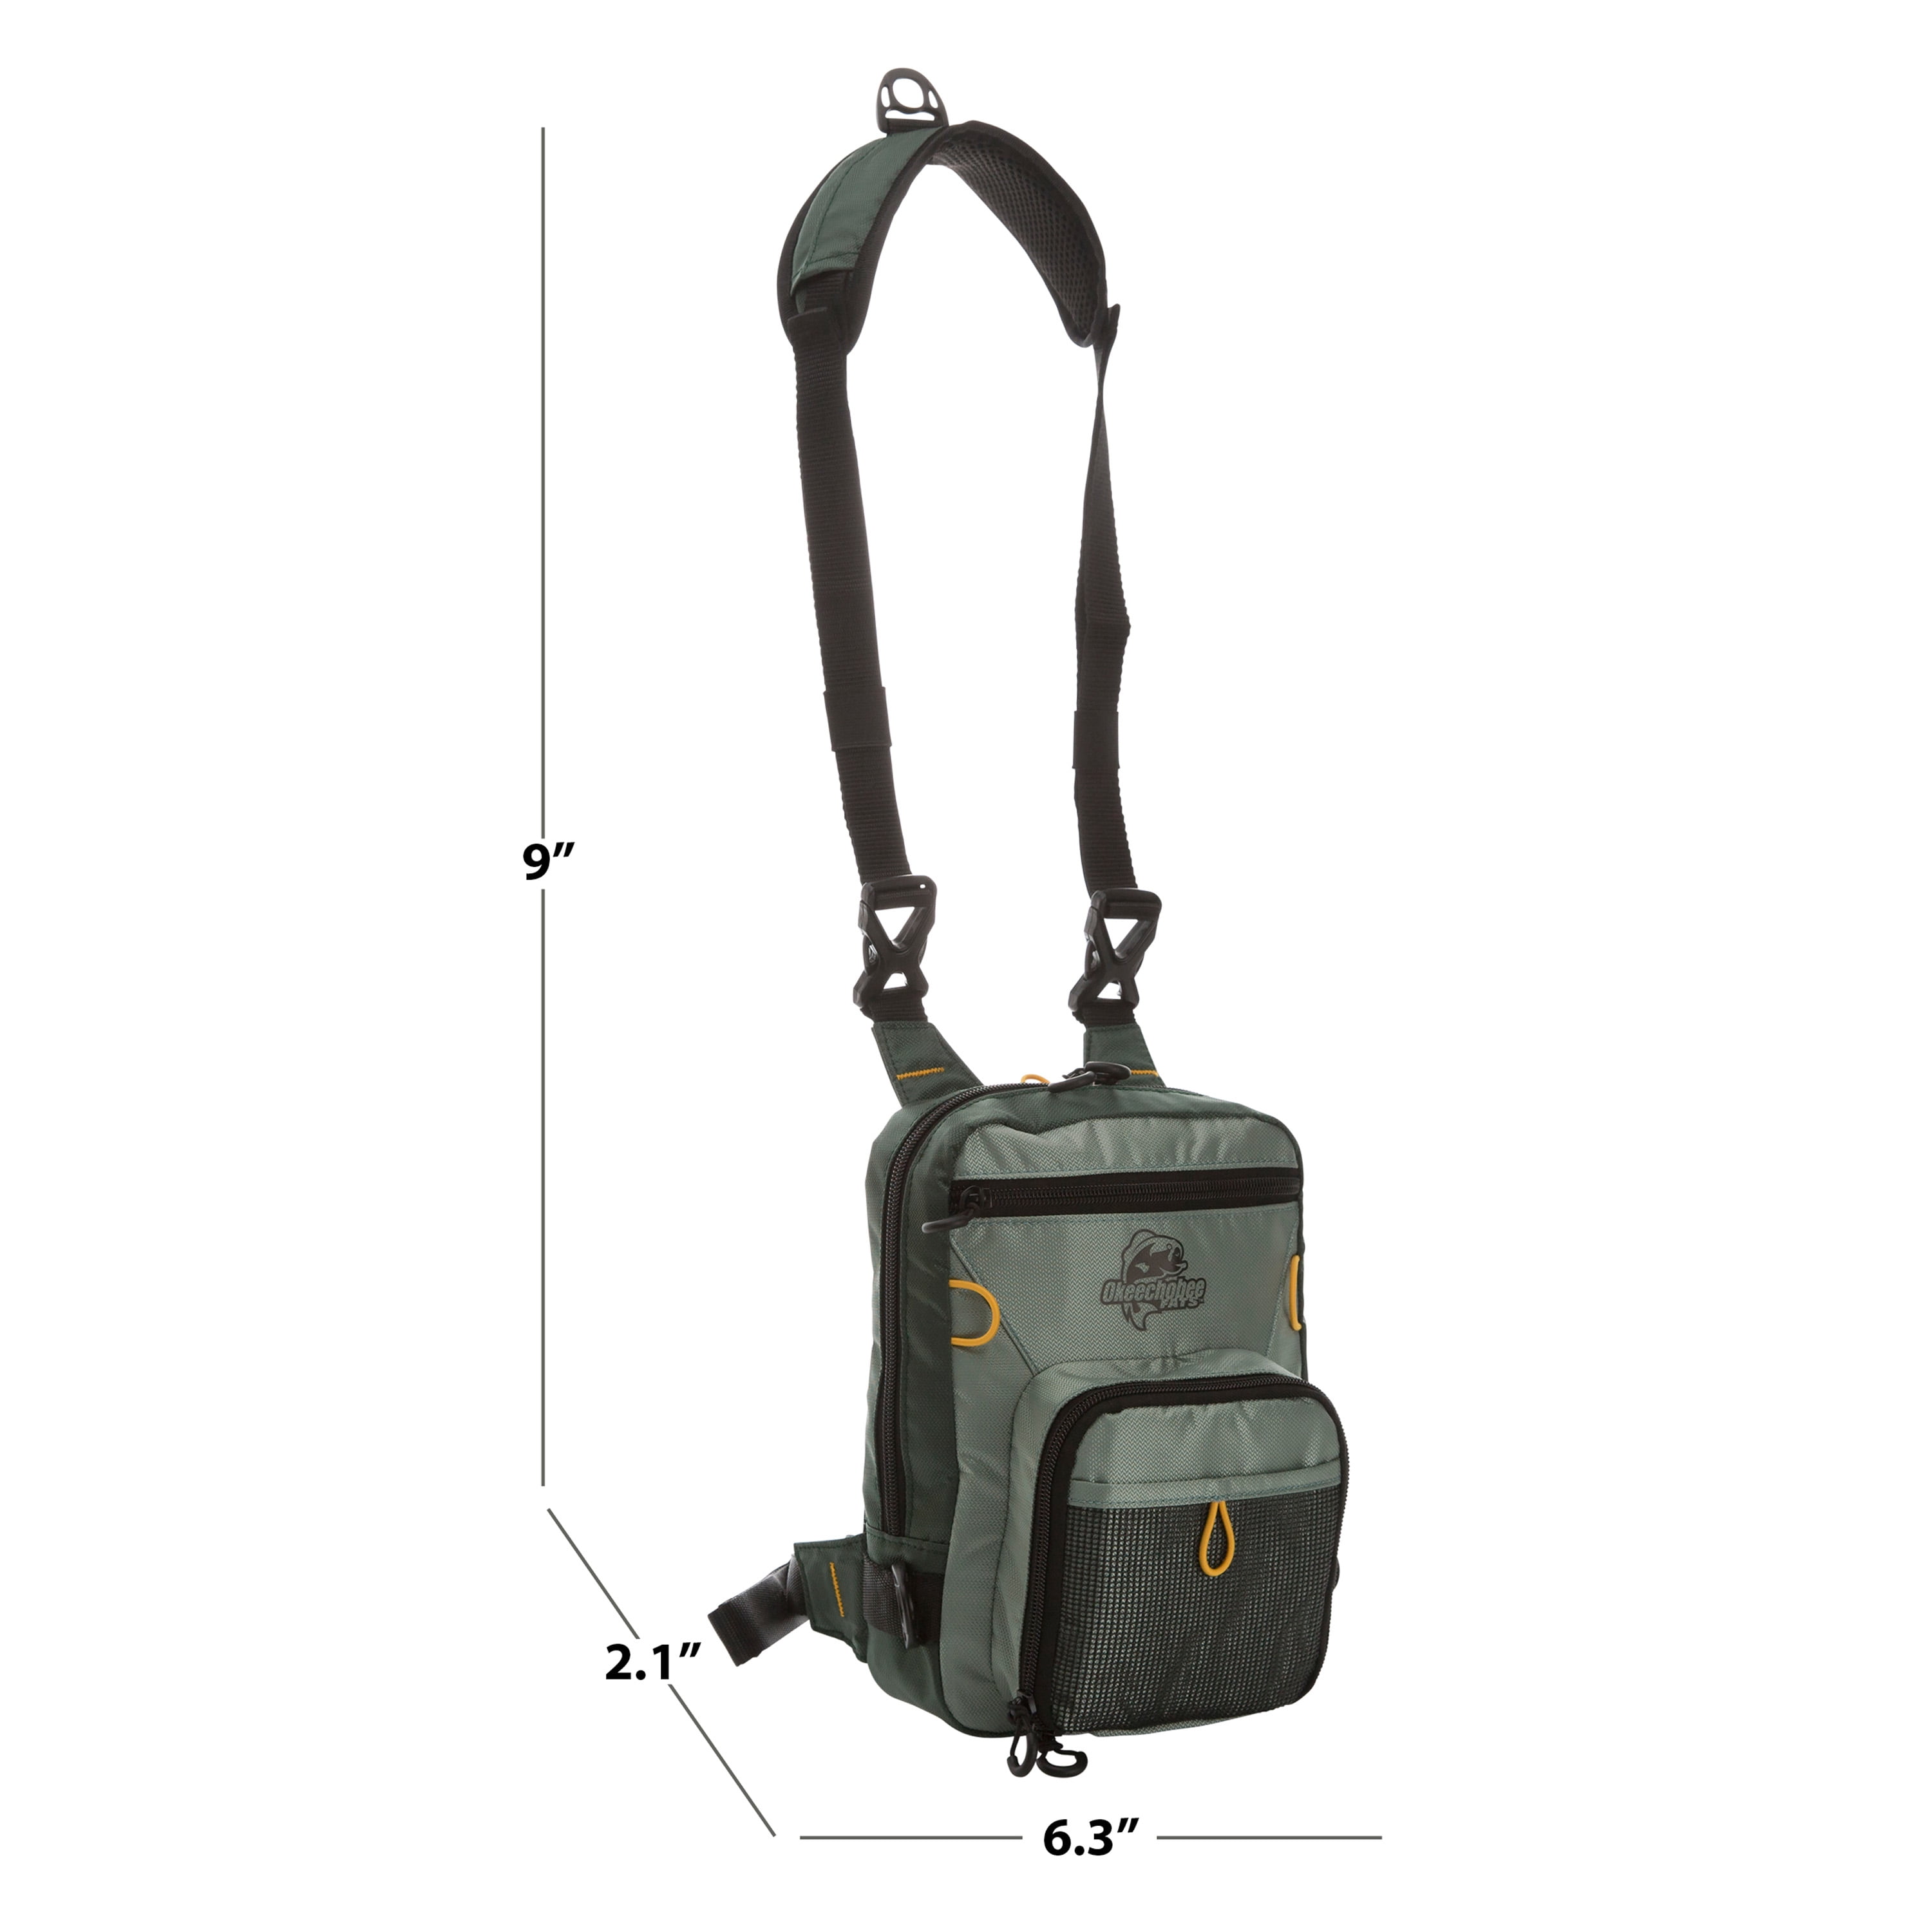 New Backpack Cooler Tackle Fishing Bag/Box With Shoulder Strap, Black | eBay